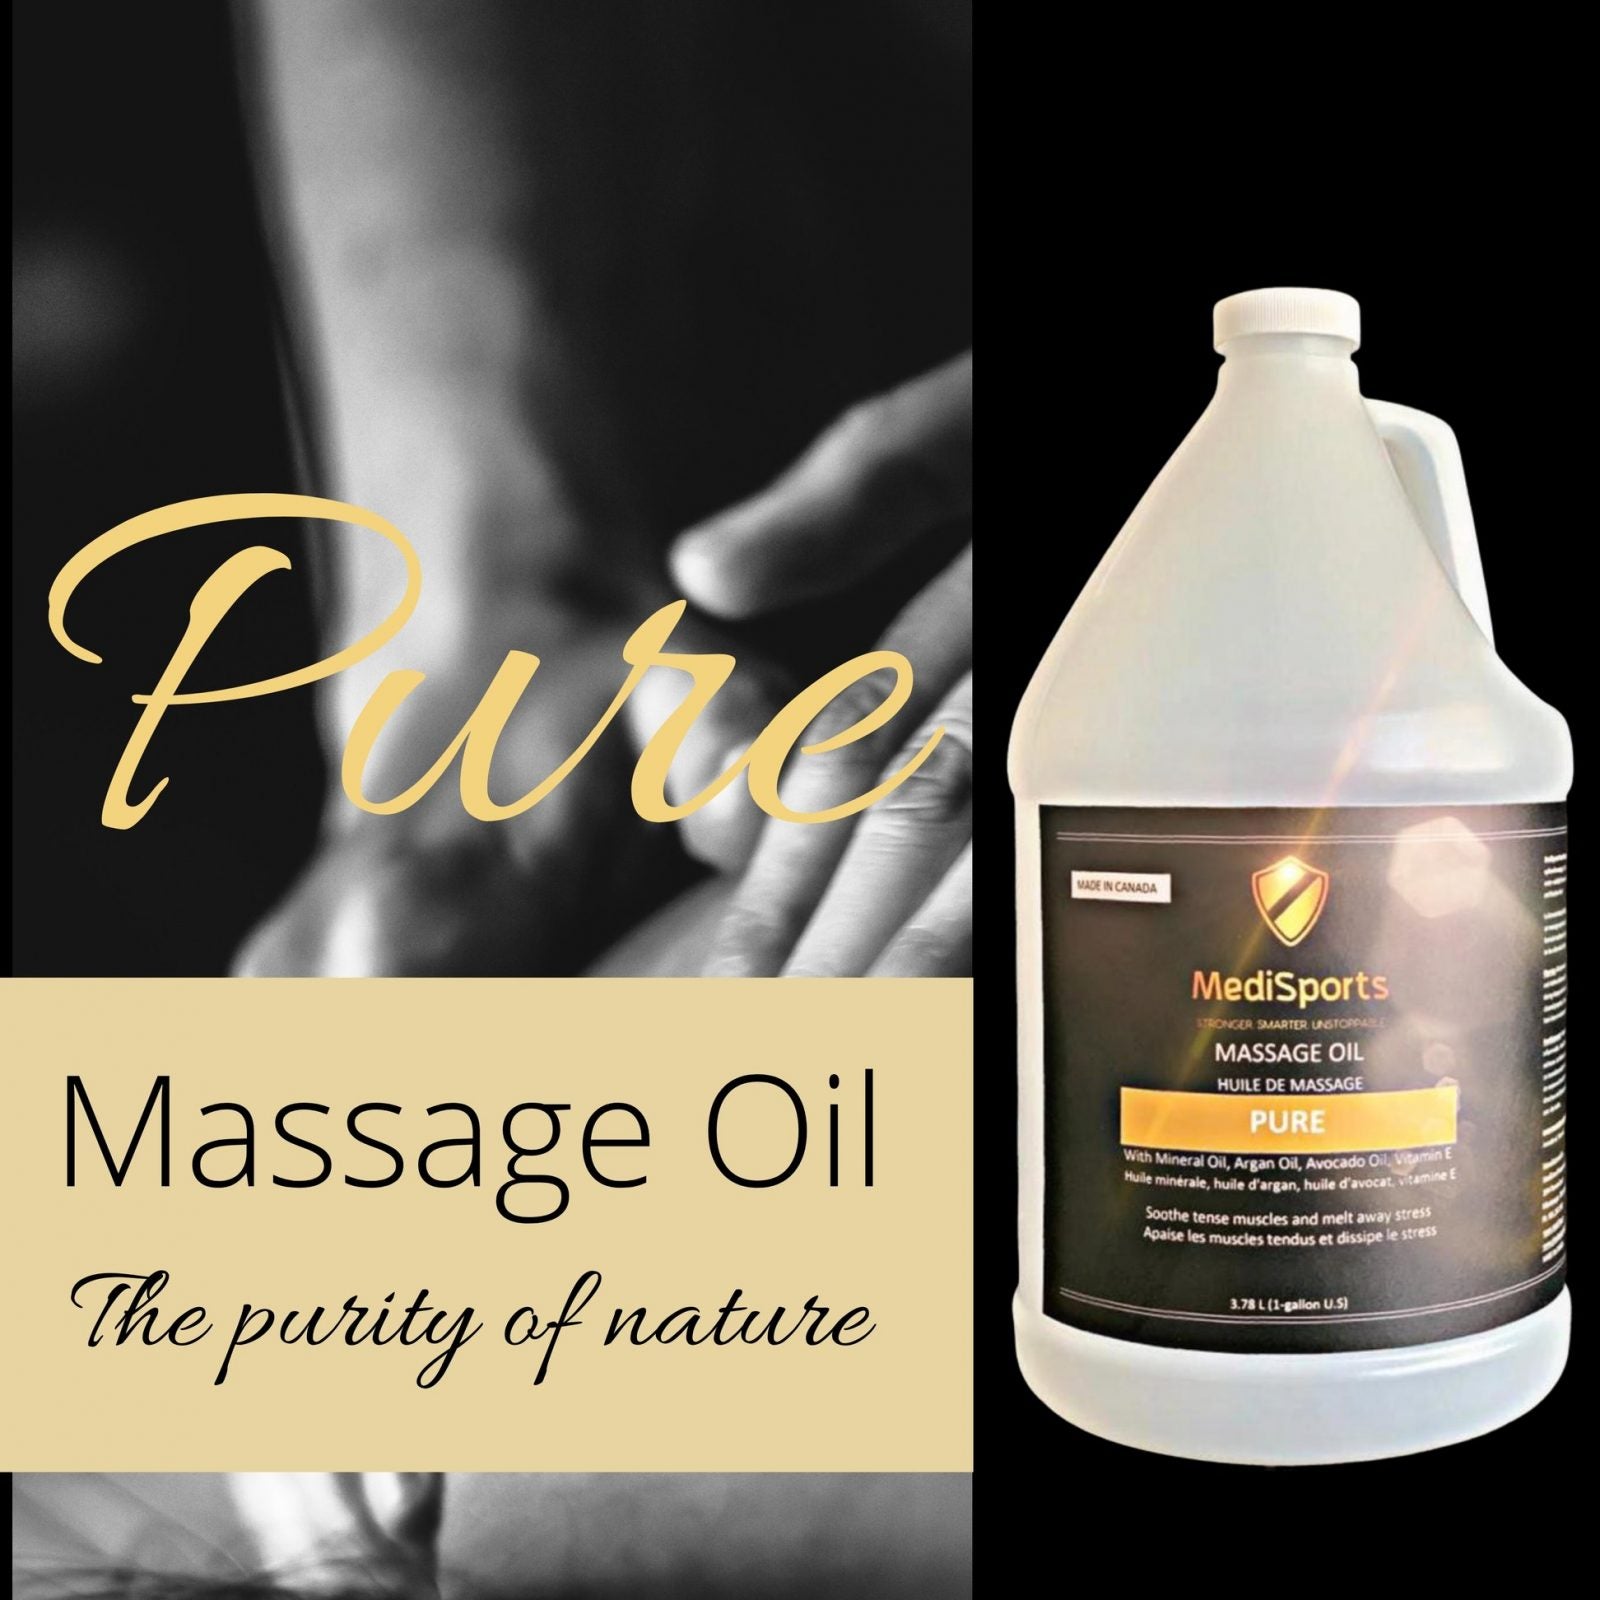 MediSports Pure Massage Oil (1 Gallon) - physio supplies canada